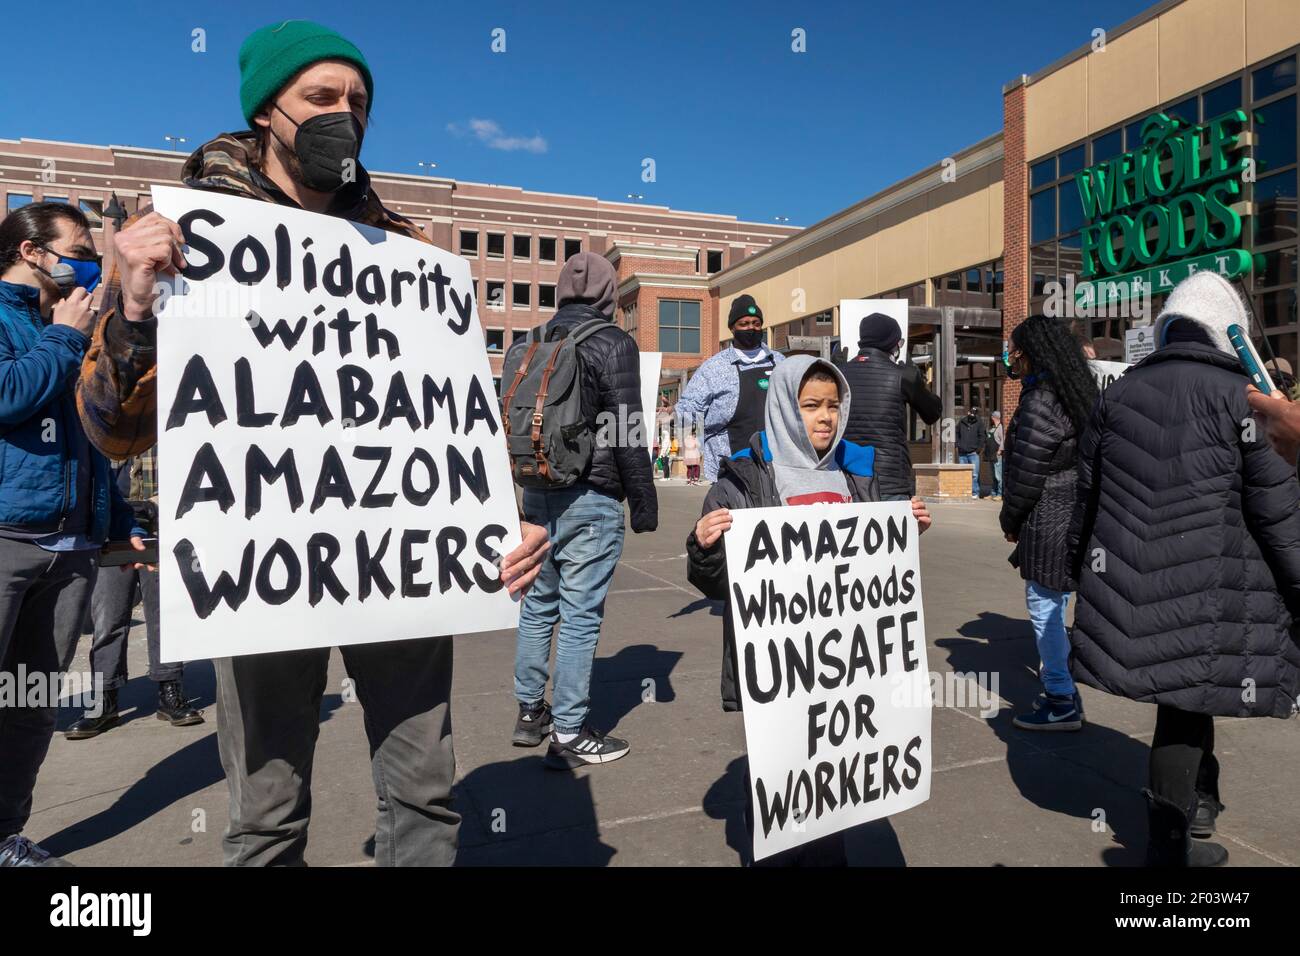 Detroit, Michigan, Stati Uniti. 6 marzo 2021. Le persone si radunano a  sostegno dei lavoratori Amazon che stanno cercando di formare un sindacato  in un magazzino Amazon a Bessemer, Alabama. Sarebbe la